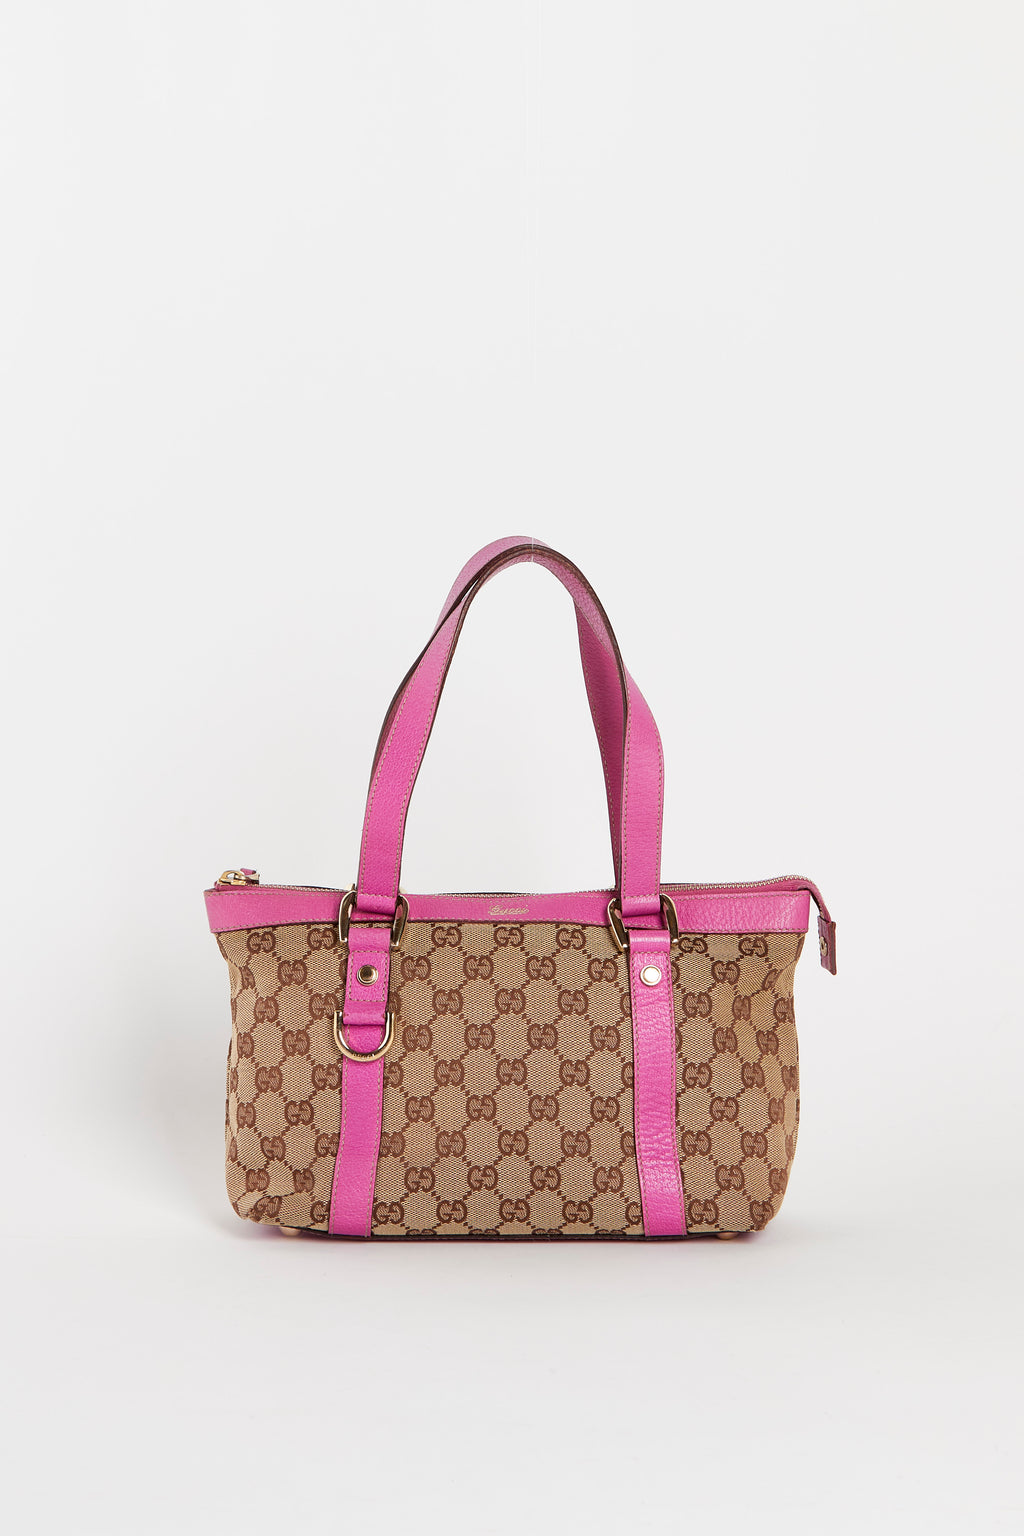 Vintage Gucci Pink Leather Small Shoulder Bag